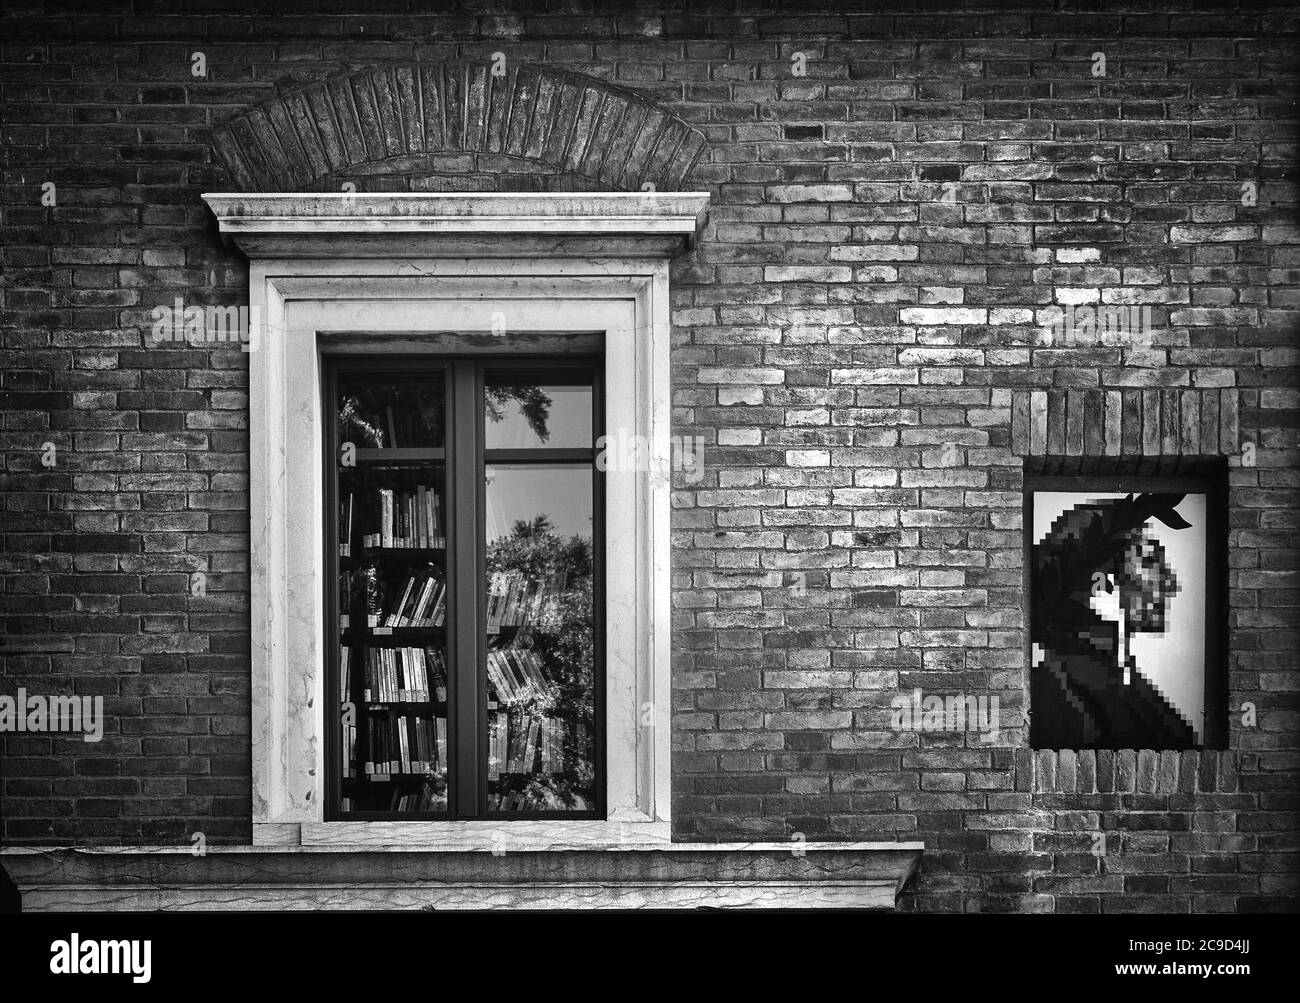 Ravenne, Italie. 28 juillet 2020. La fenêtre avec une bibliothèque à l'intérieur avec une représentation de Dante Alighieri sur le mur d'une maison Banque D'Images